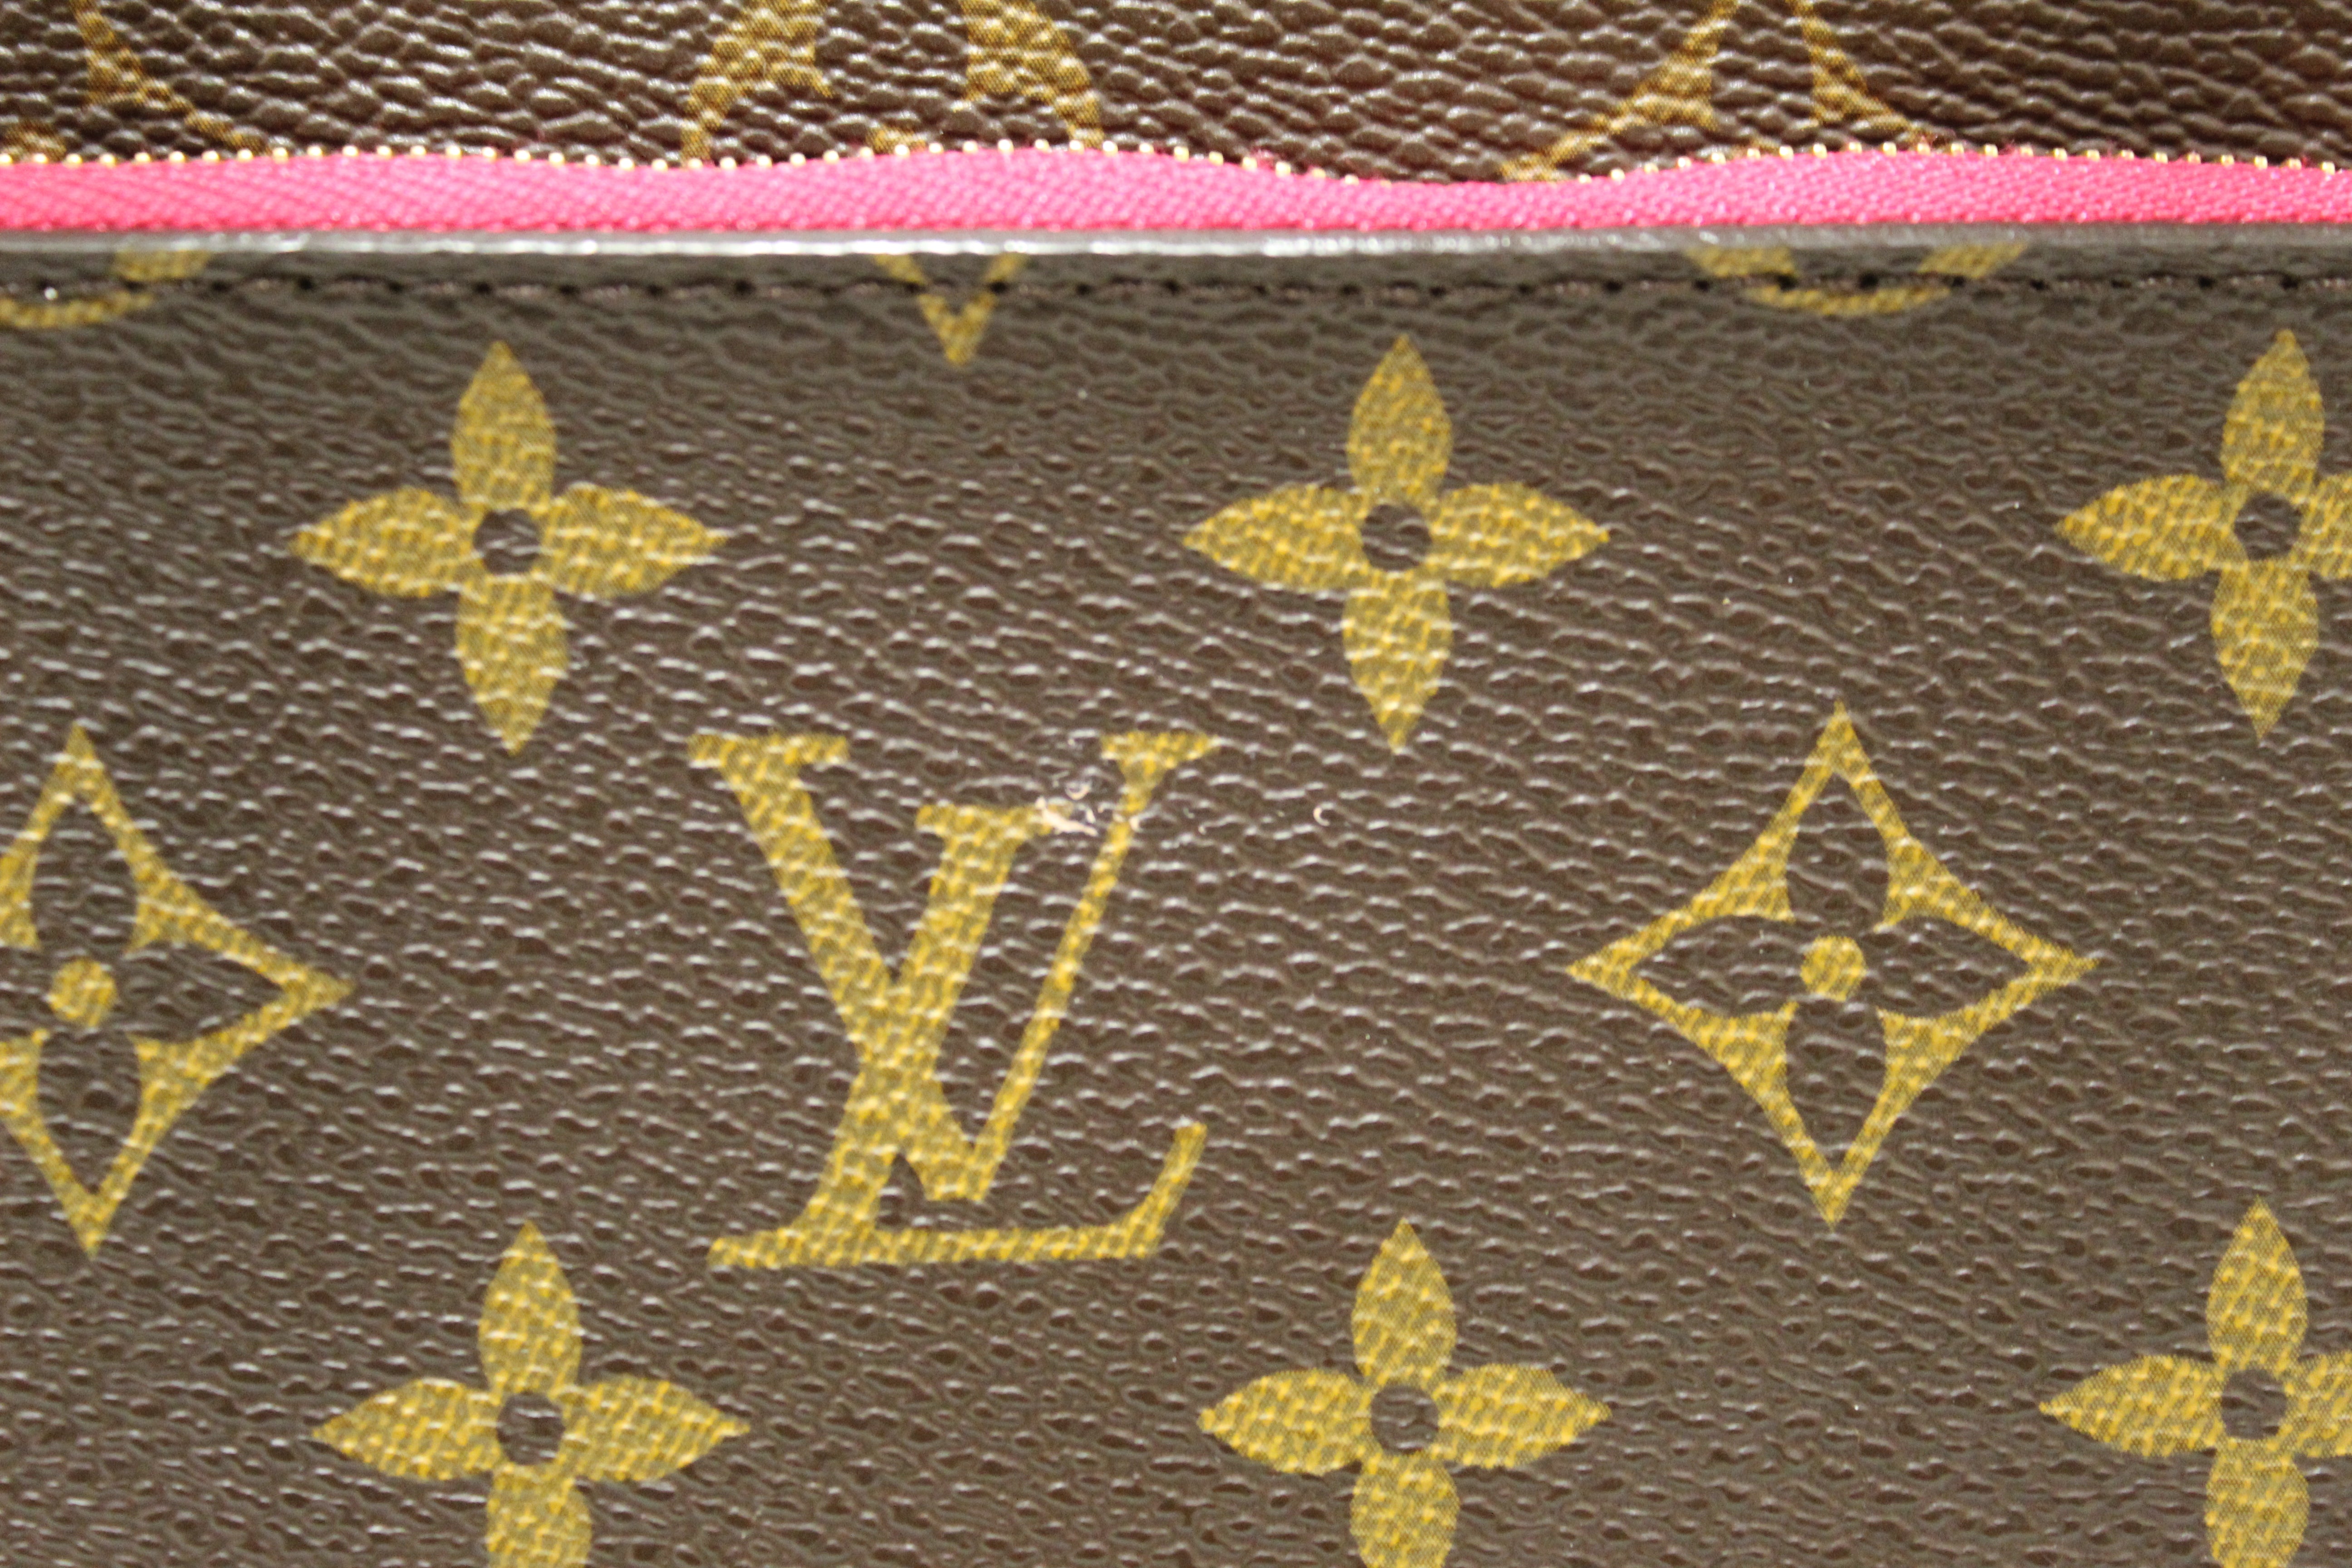 Louis Vuitton Neverfull Handbag 385431